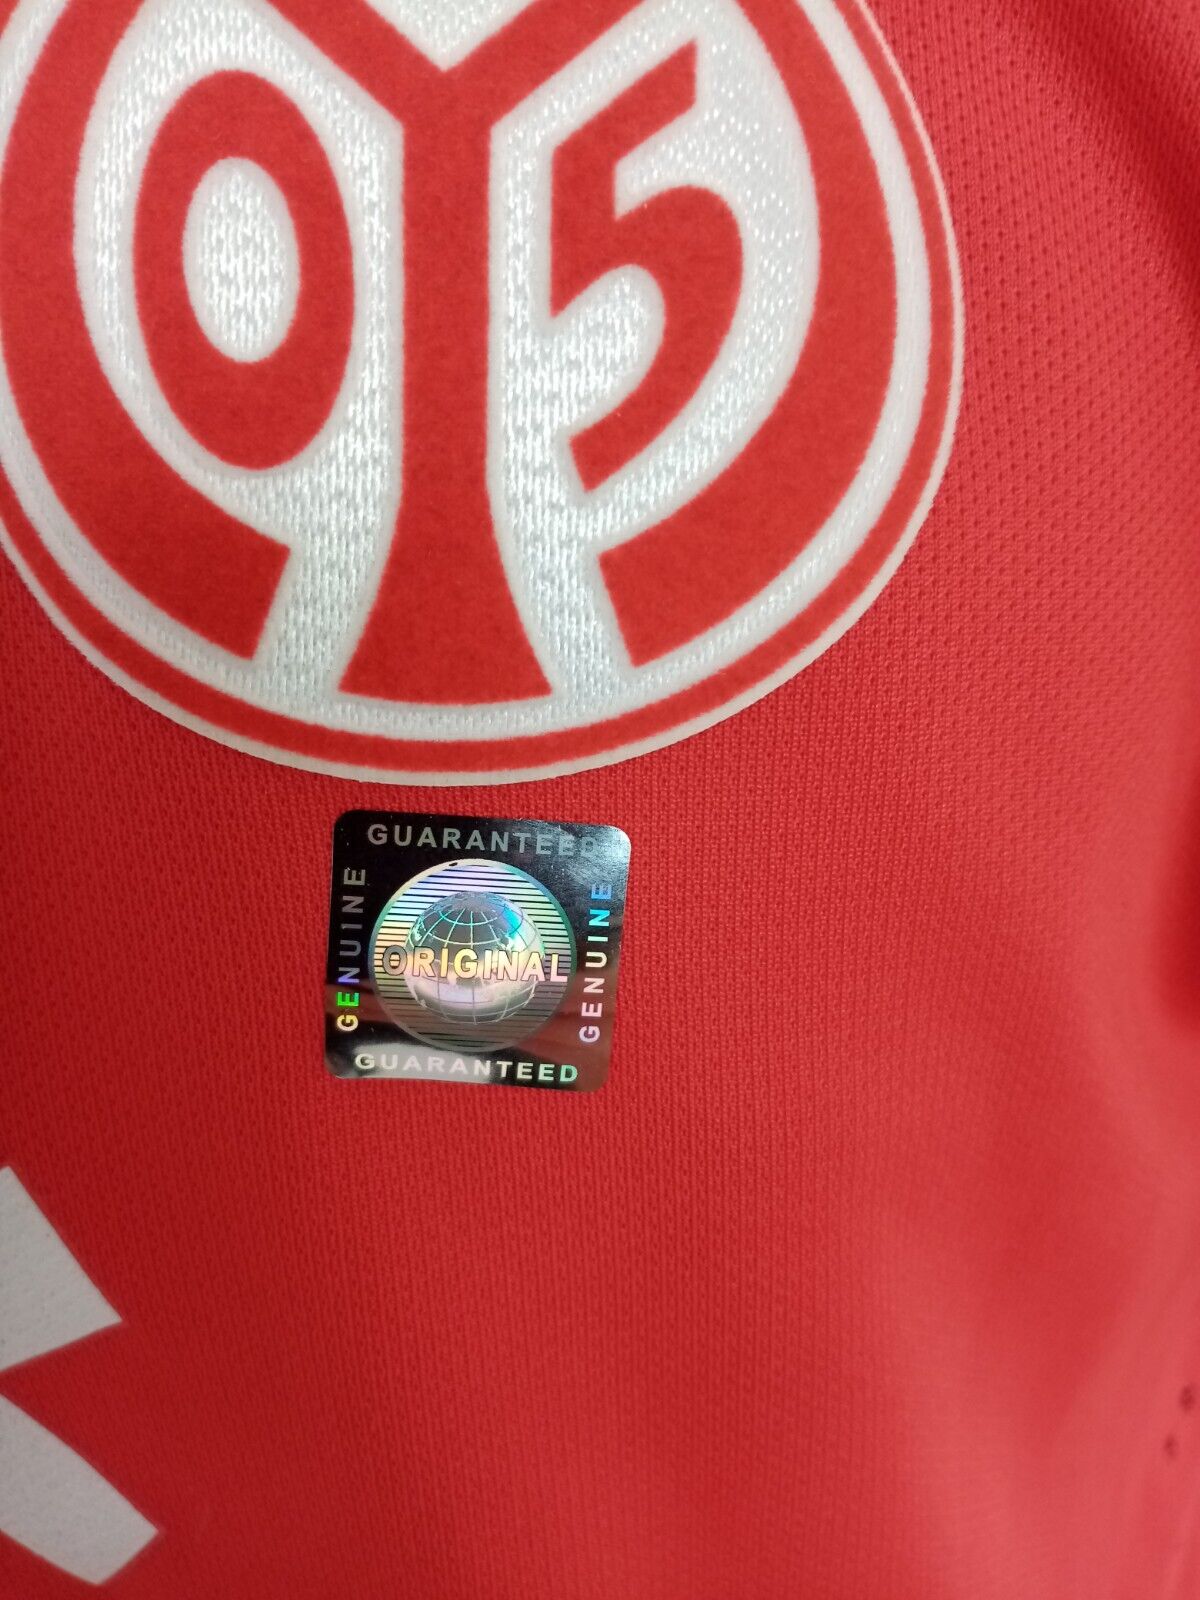 Mainz 05 Trikot 2012/2013 Teamsigniert FSV Bundesliga Autogramm Neu Nike COA M